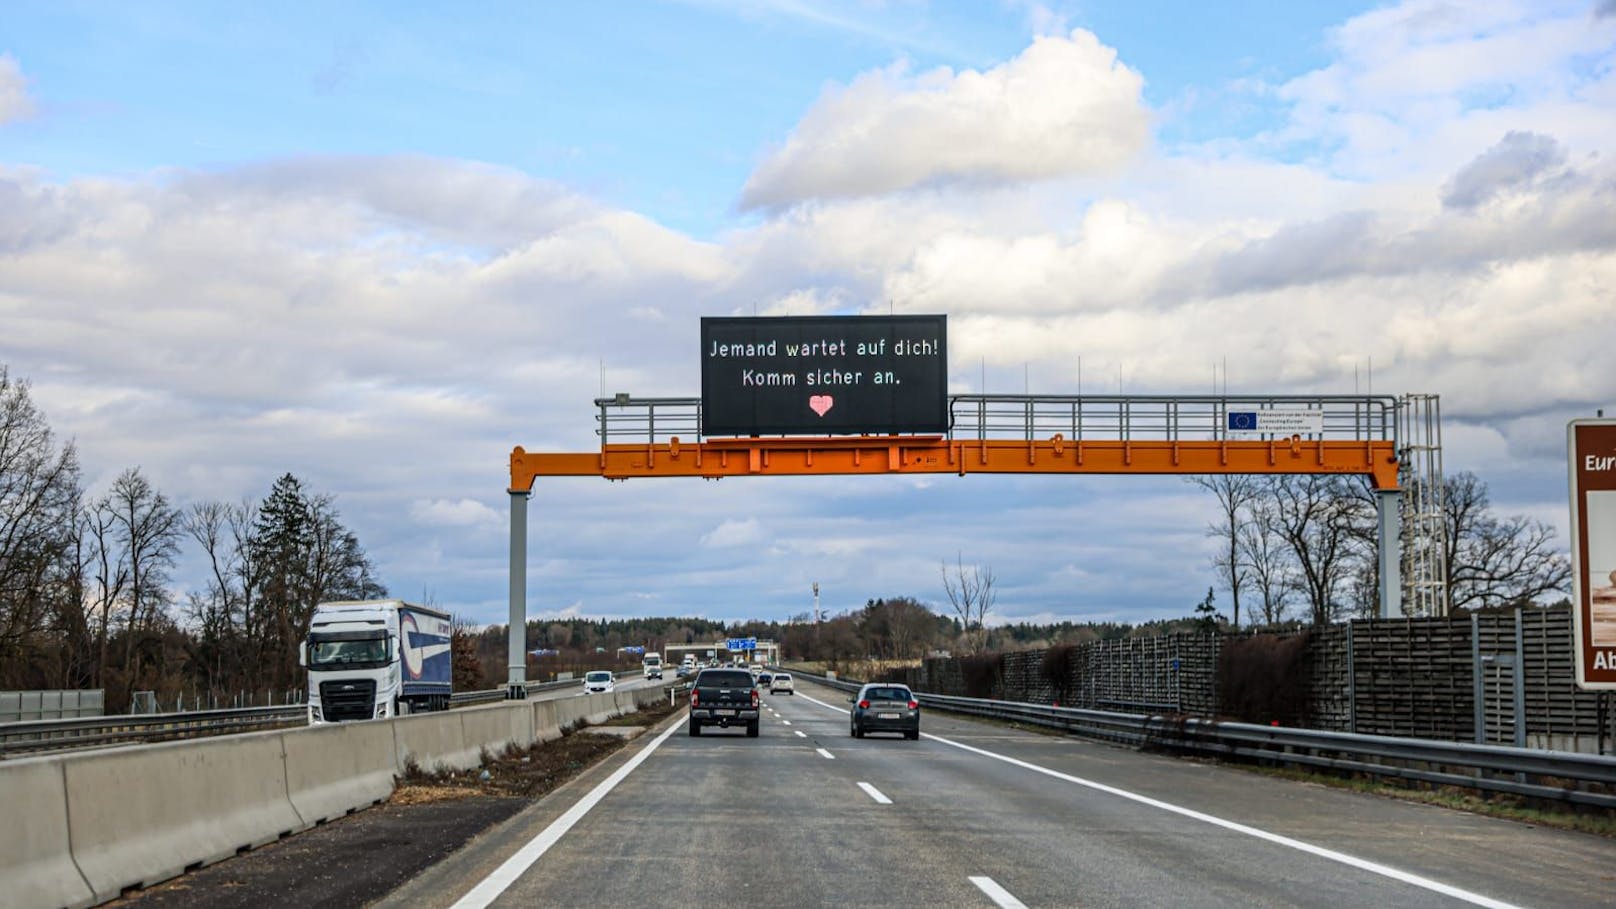 Liebes-Botschaft auf Autobahn mit traurigem Hintergrund